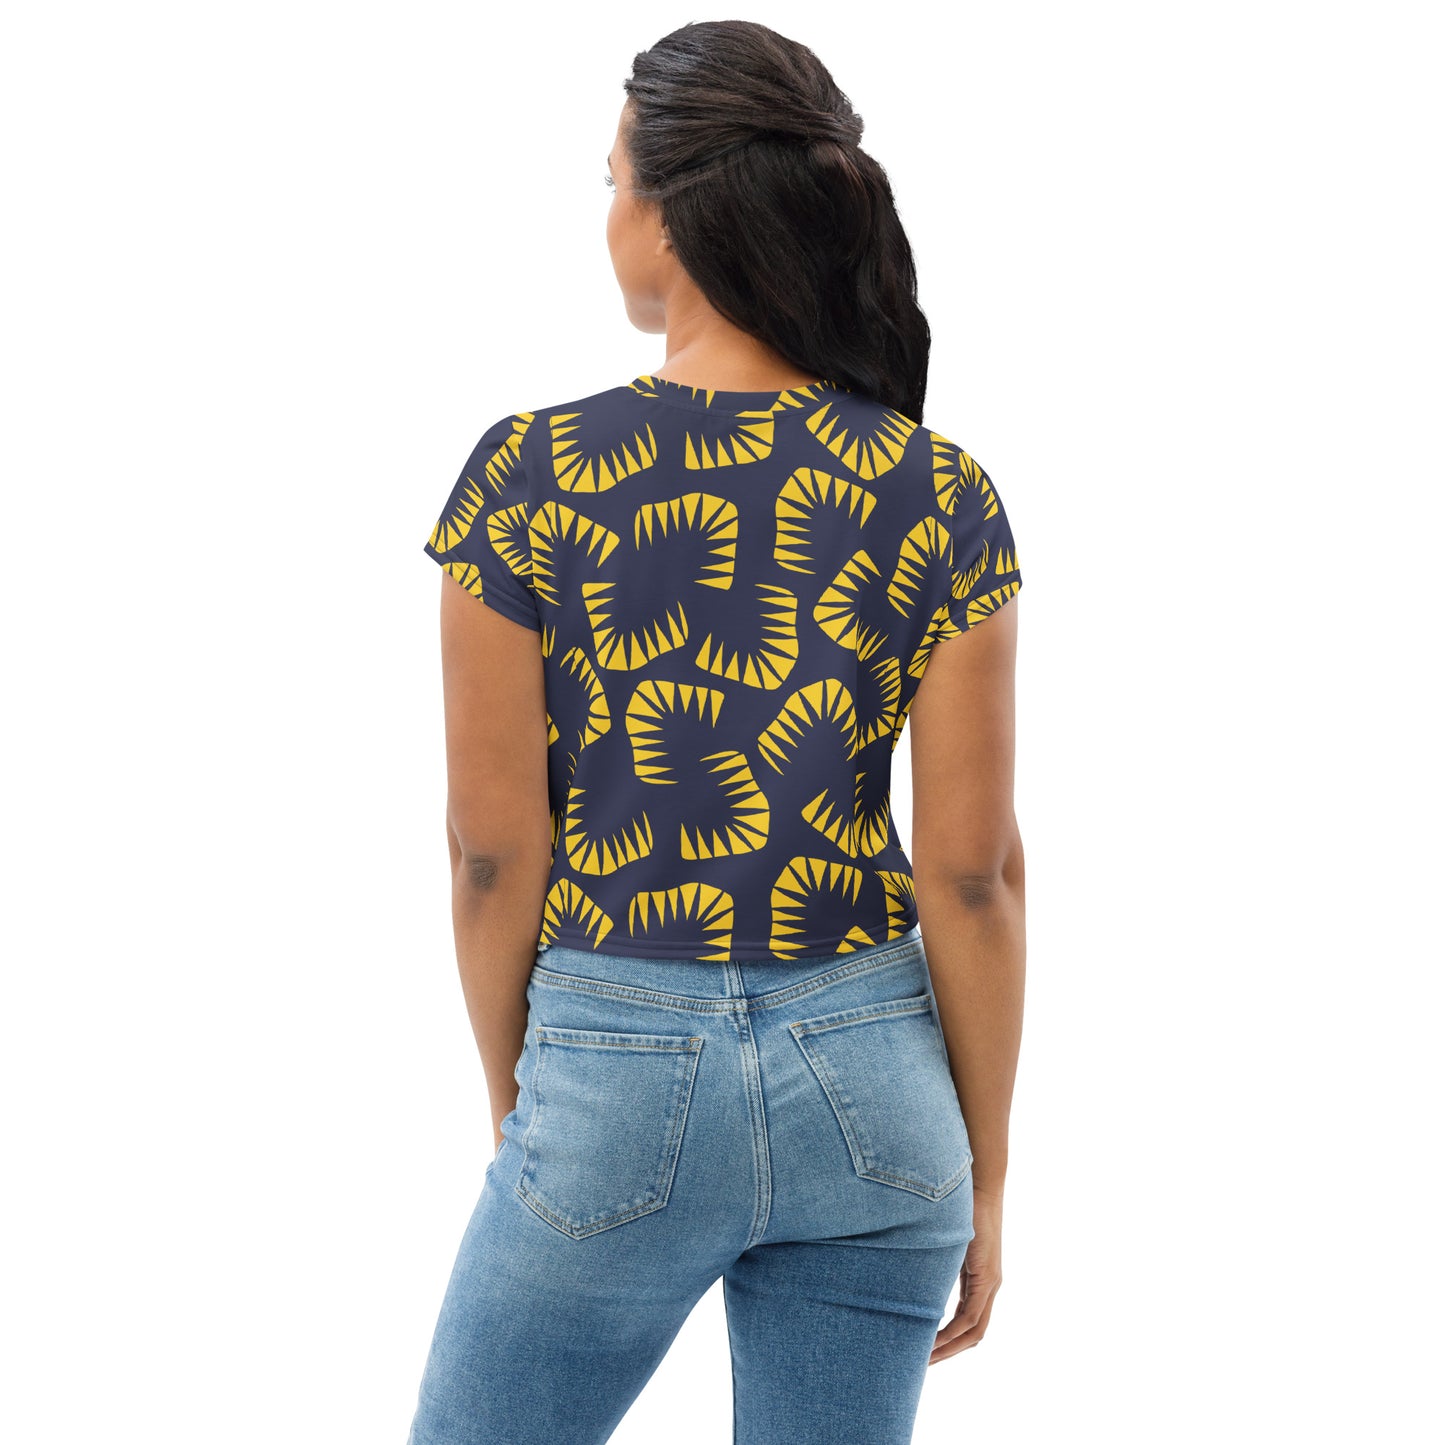  Women's Modern Abstract Shapes Crop Tee T-shirt